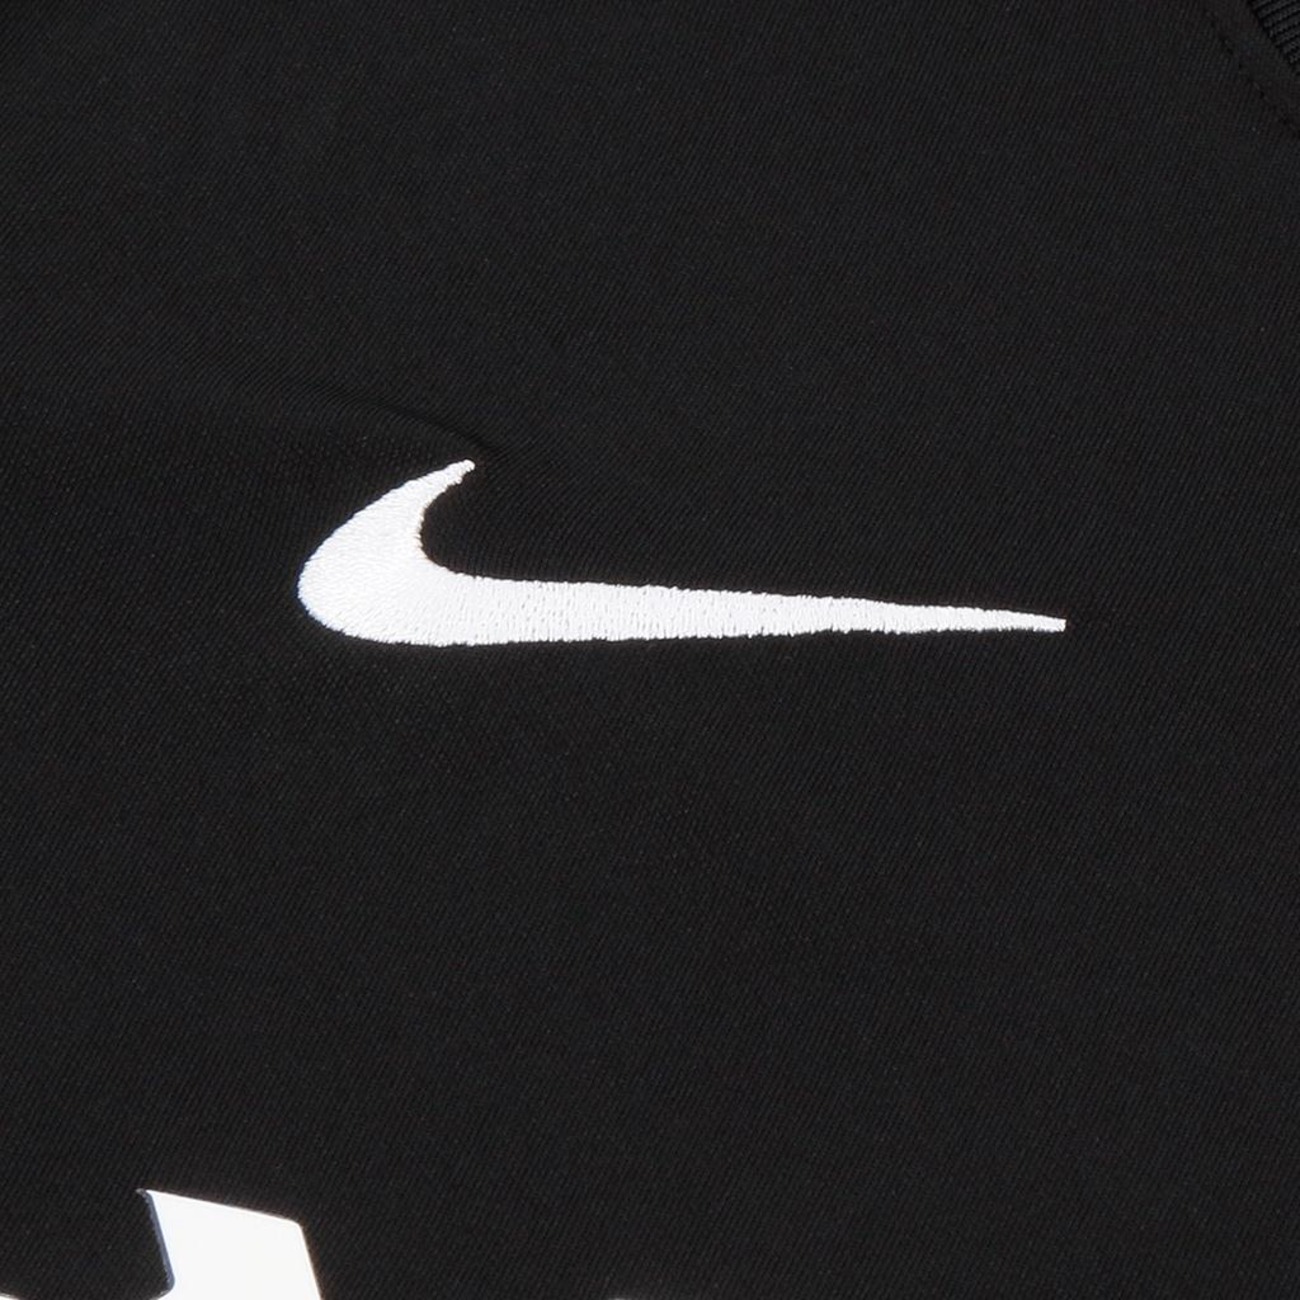 Camisa Internacional Nike 2019 feminina – Memorias do Esporte